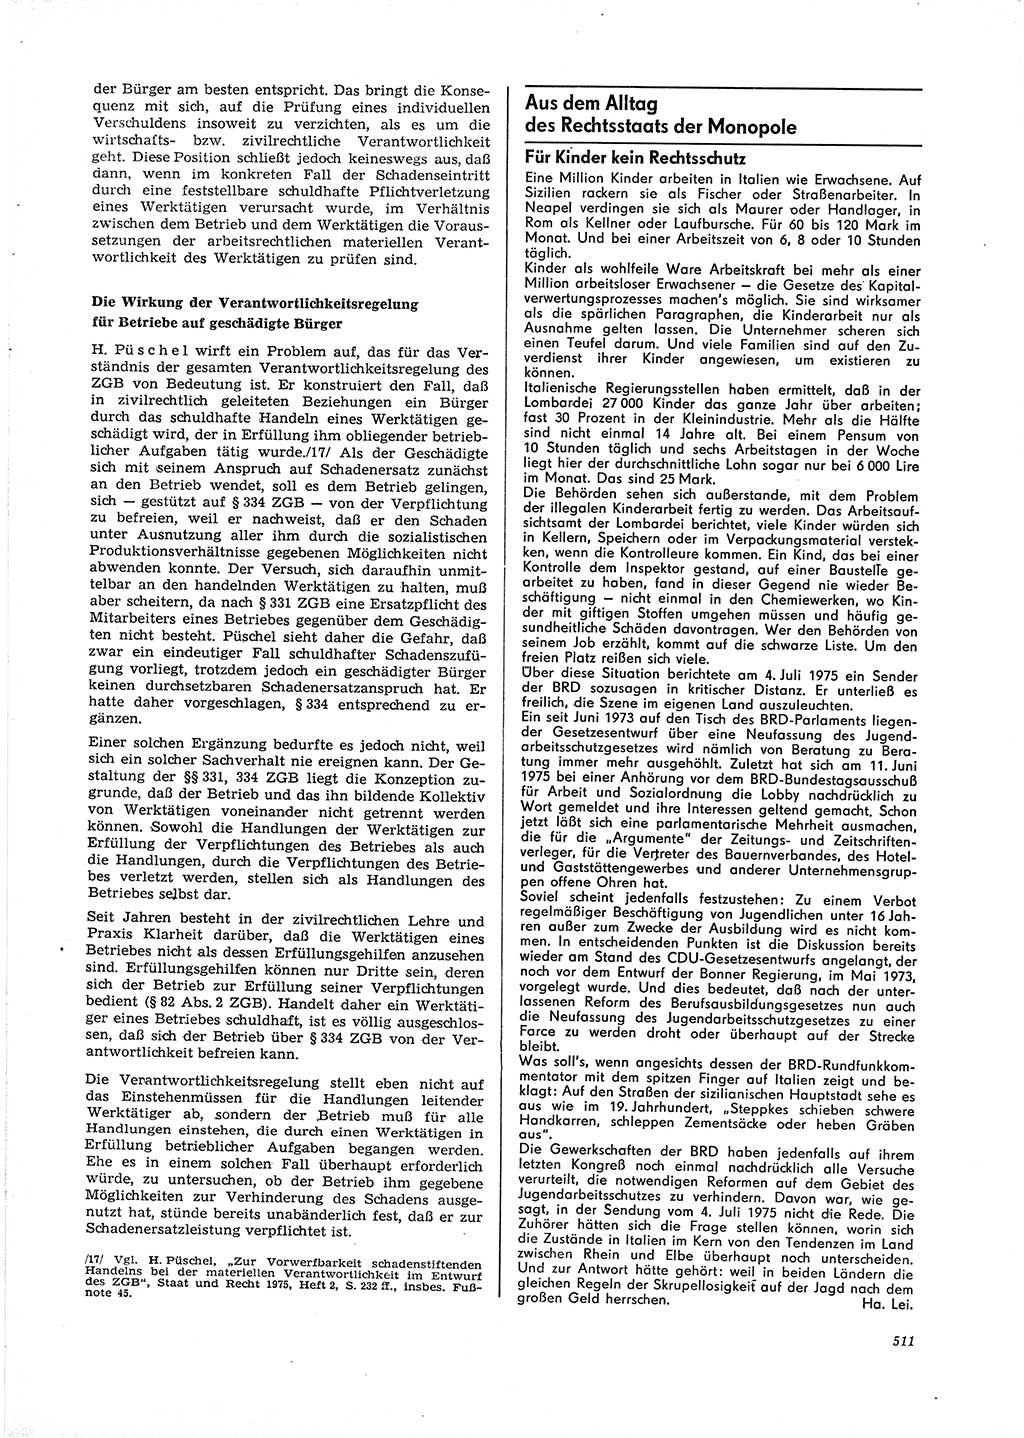 Neue Justiz (NJ), Zeitschrift für Recht und Rechtswissenschaft [Deutsche Demokratische Republik (DDR)], 29. Jahrgang 1975, Seite 511 (NJ DDR 1975, S. 511)